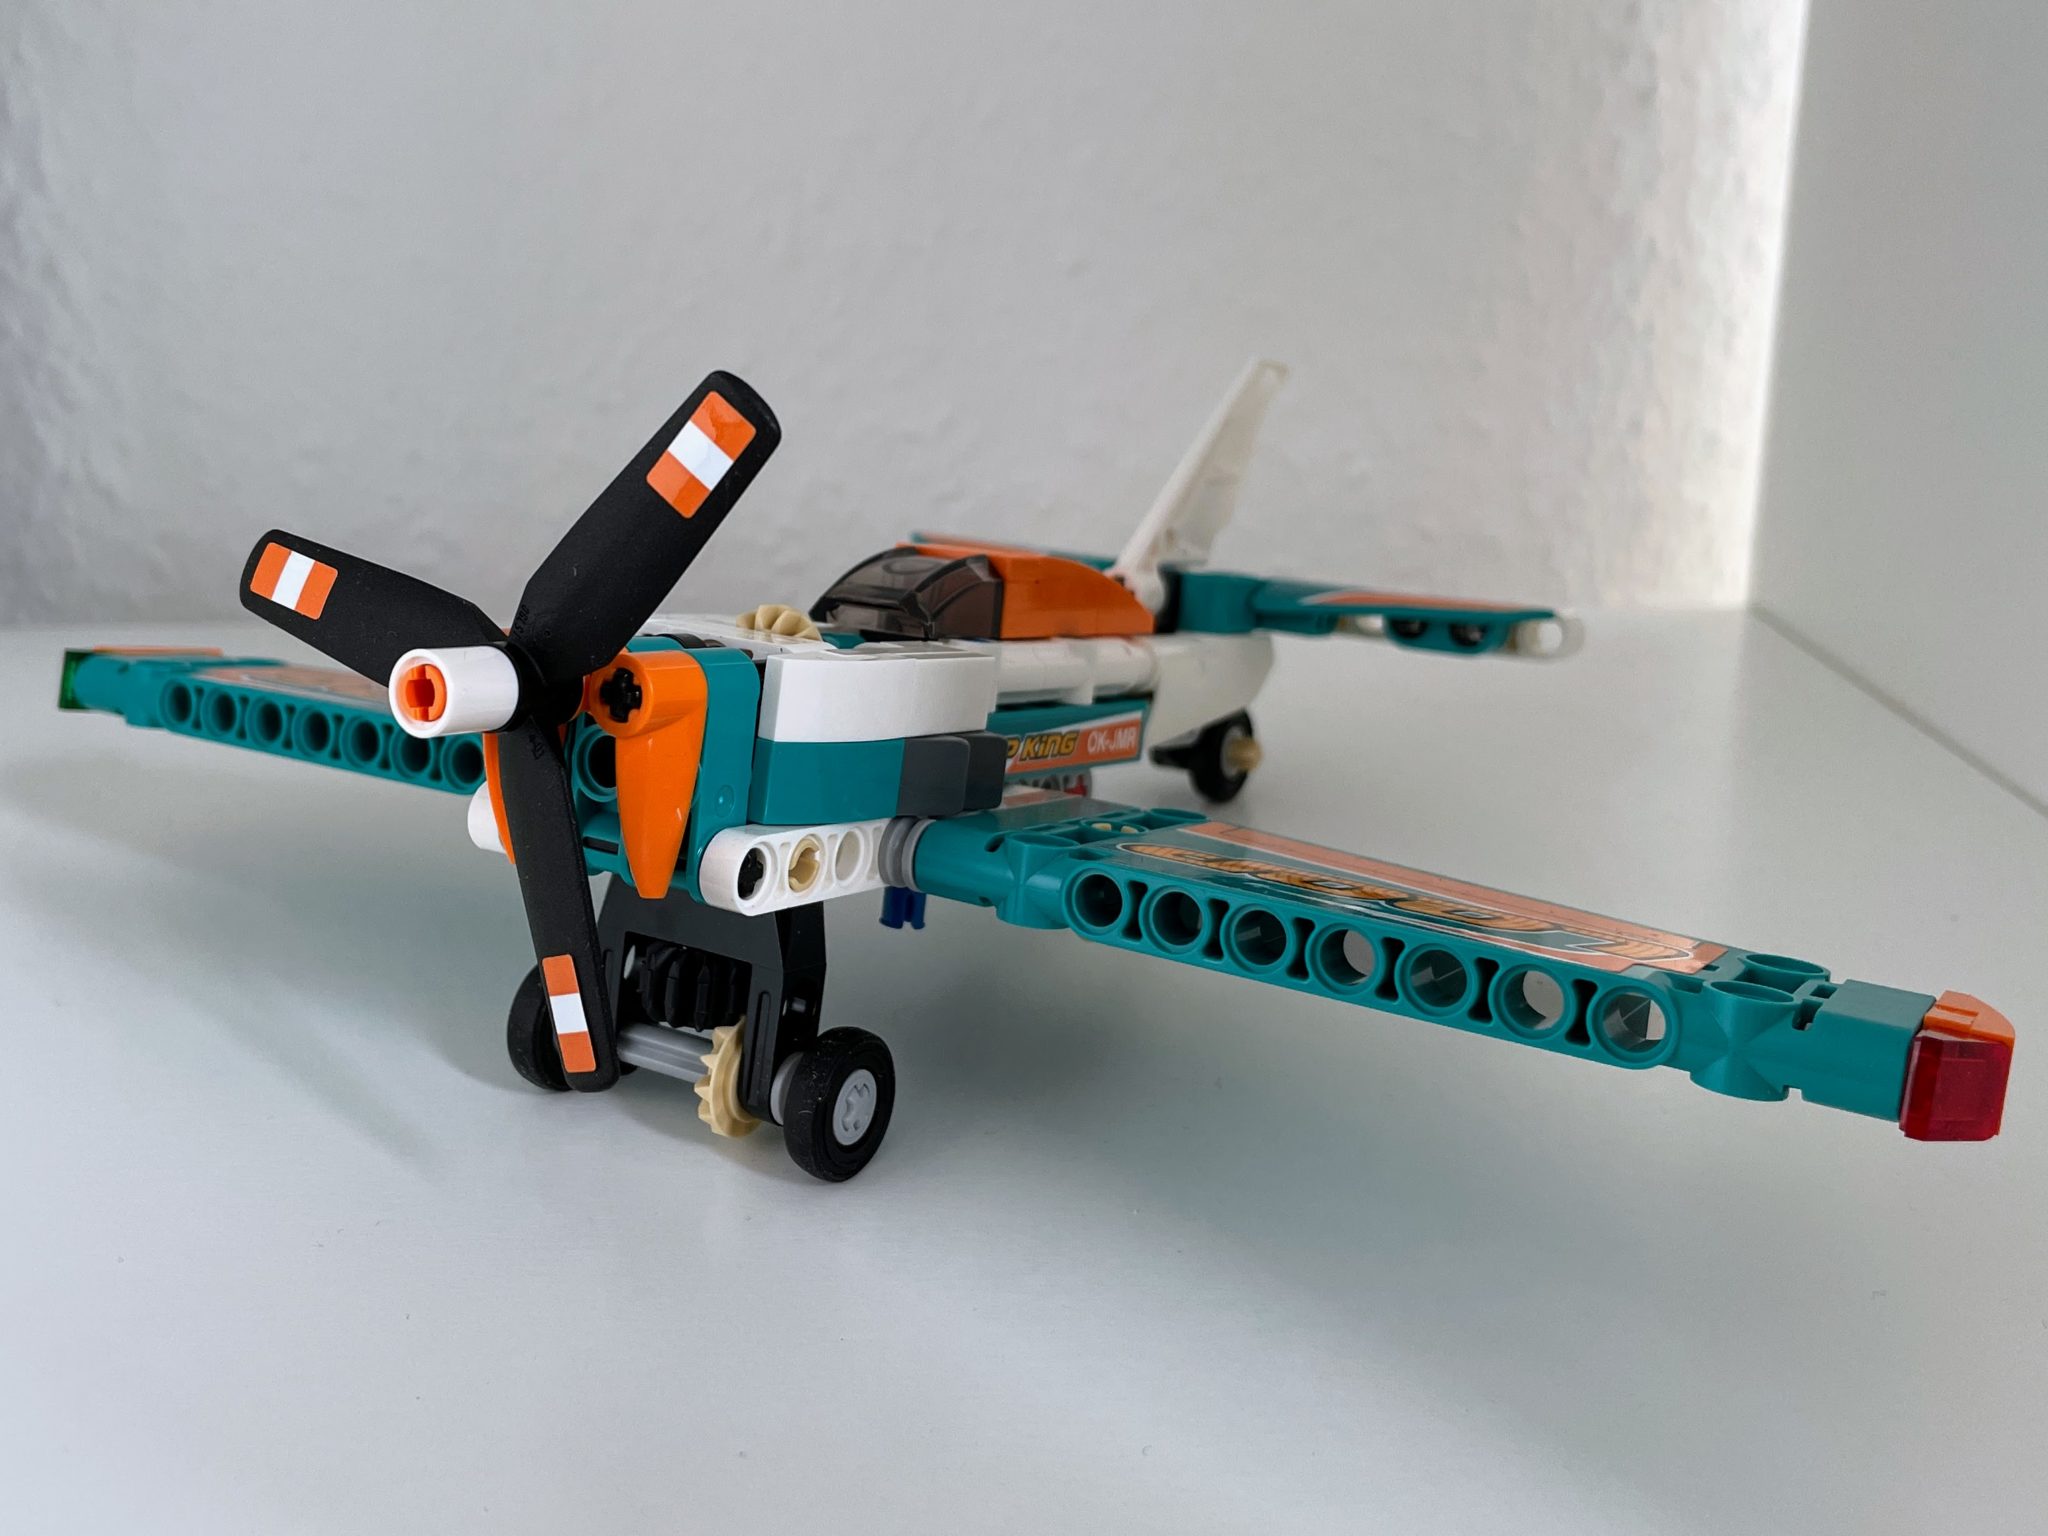 Lego Technic Rennflugzeug